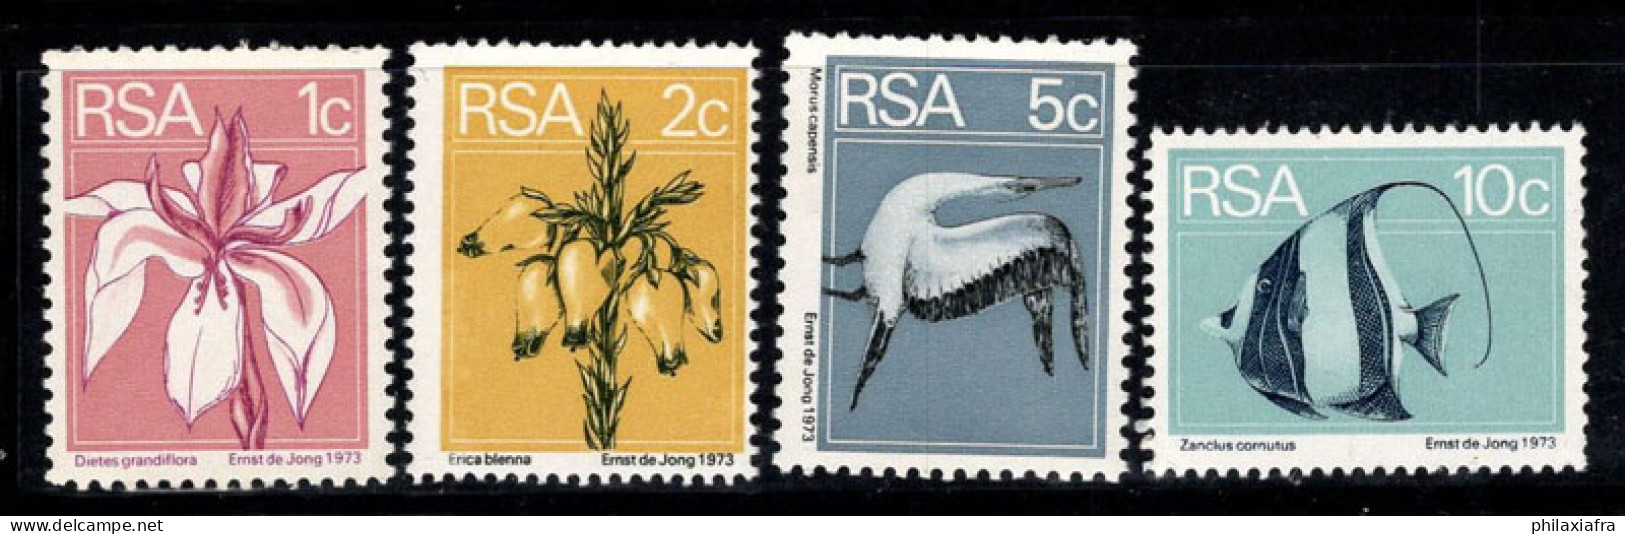 Afrique Du Sud 1974 Mi. 463A-466A Neuf ** 100% Flore Et Faune, Poissons, Fleurs - Neufs